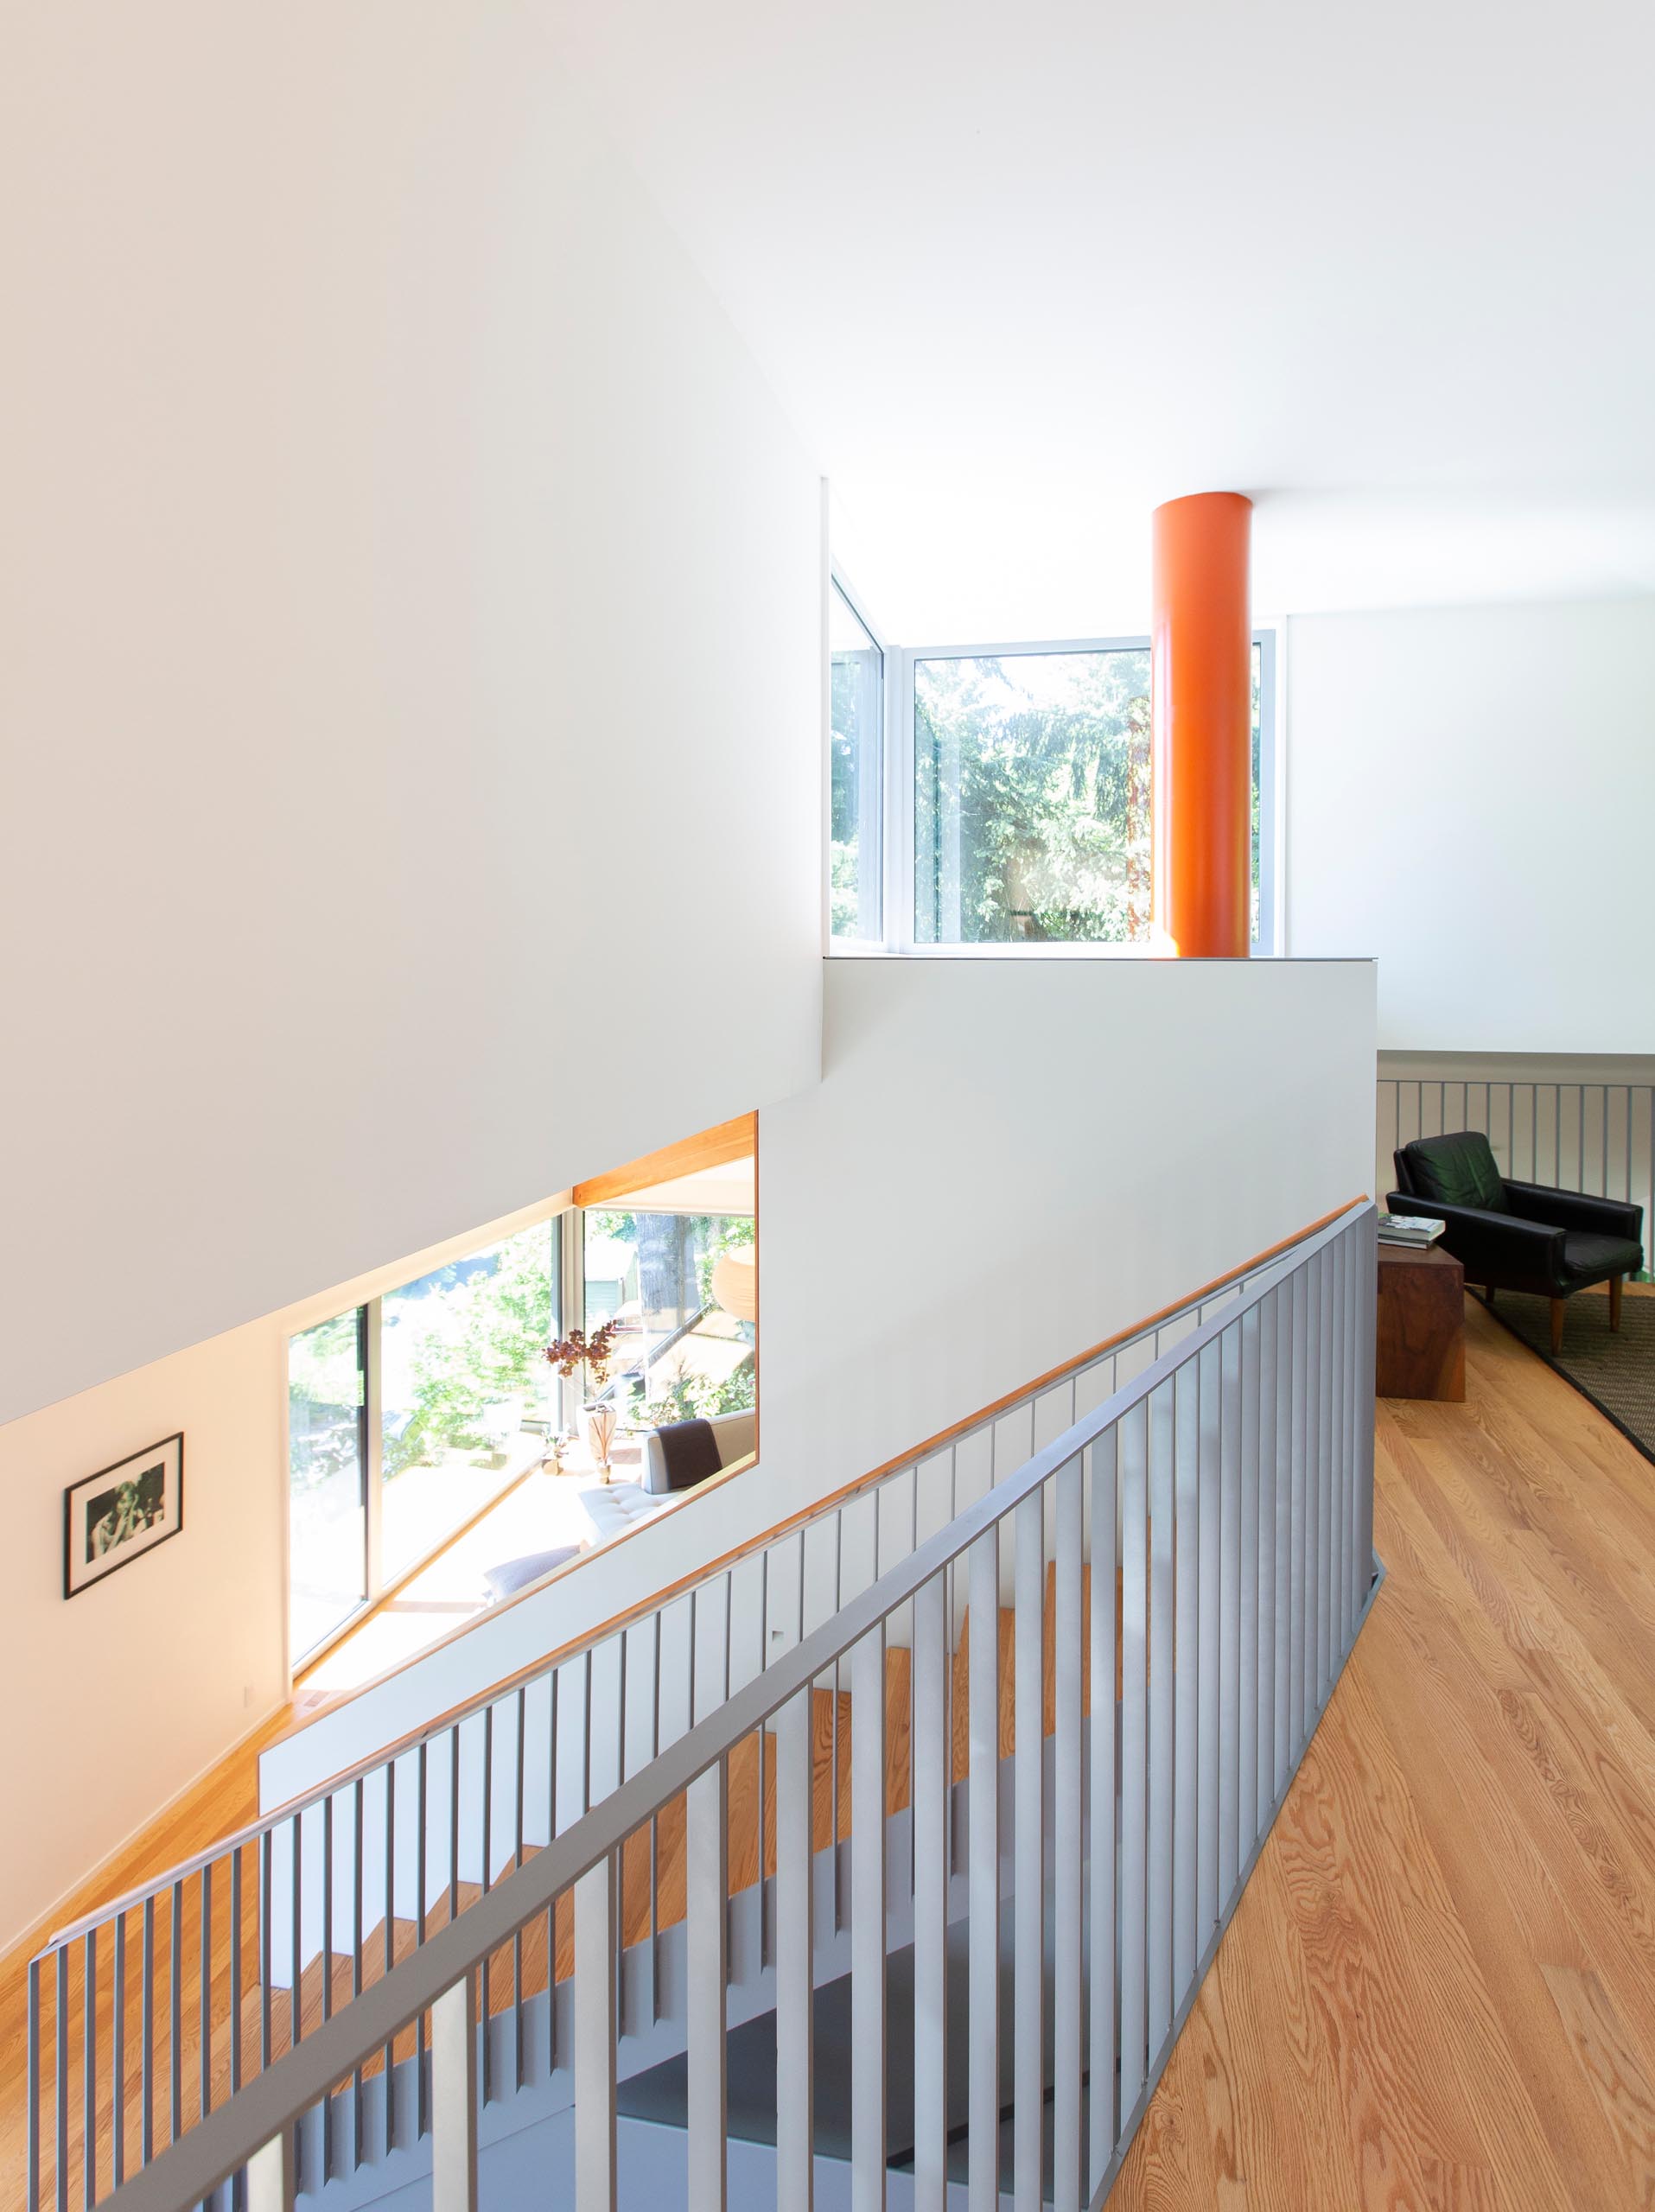 Матовые серые и деревянные лестницы соединяют главный уровень этого современного дома с верхним этажом.